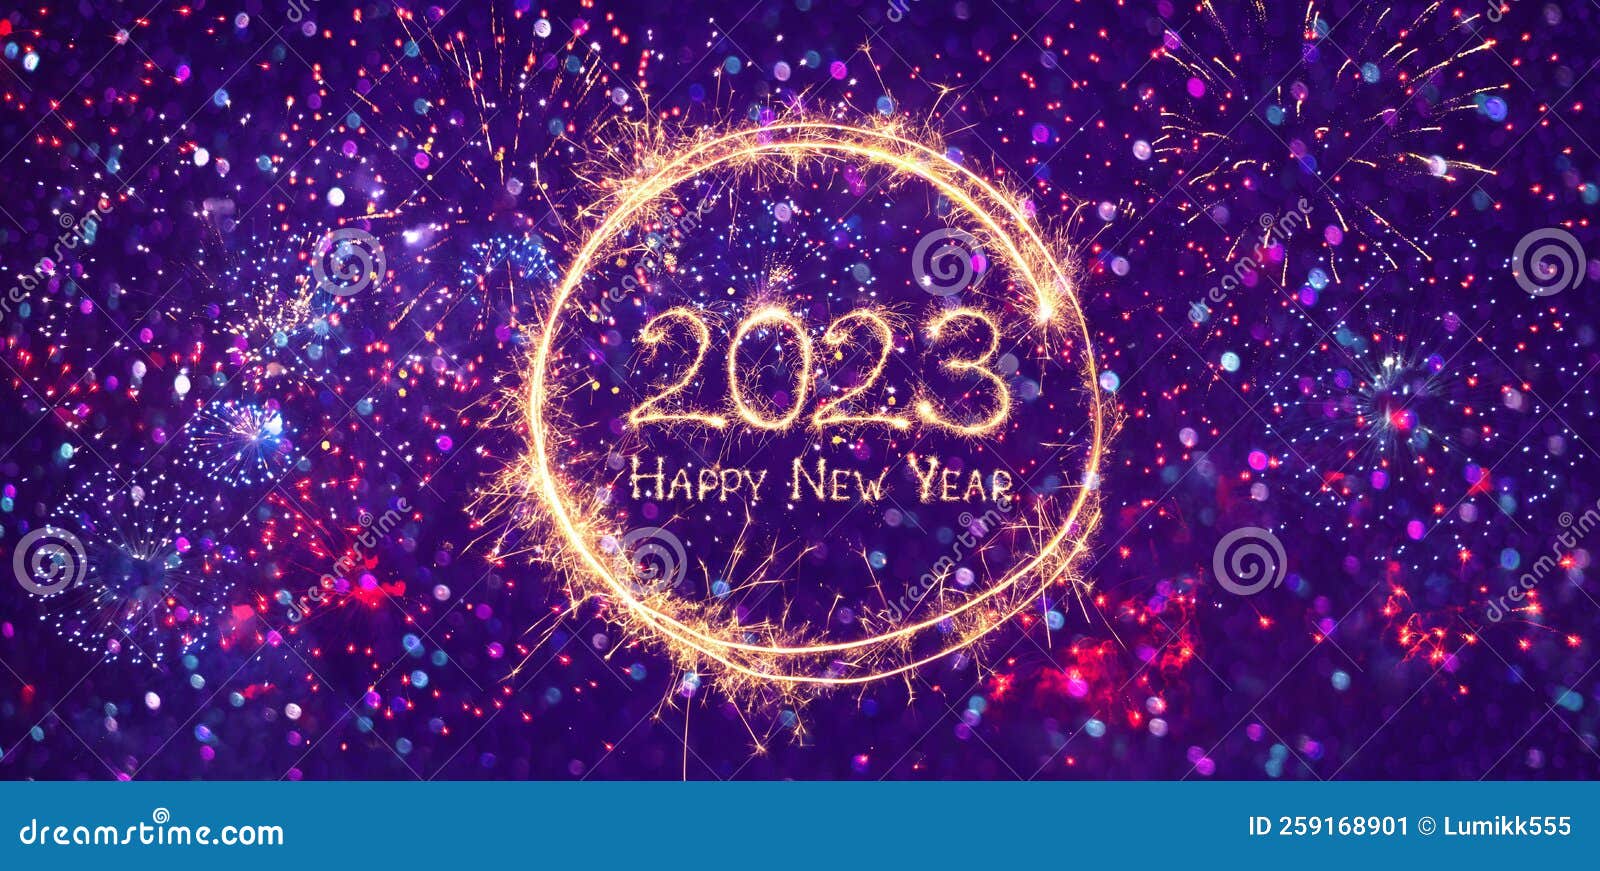 Chúc mừng năm mới 2024! Hãy cùng ngắm nhìn bức tranh minh hoạ tươi vui với nhiều màu sắc sáng tạo, bao gồm những hình ảnh động vật, ngôi sao và pháo hoa, tất cả đều mang ý nghĩa chúc mừng năm mới đầy hạnh phúc và thành công.